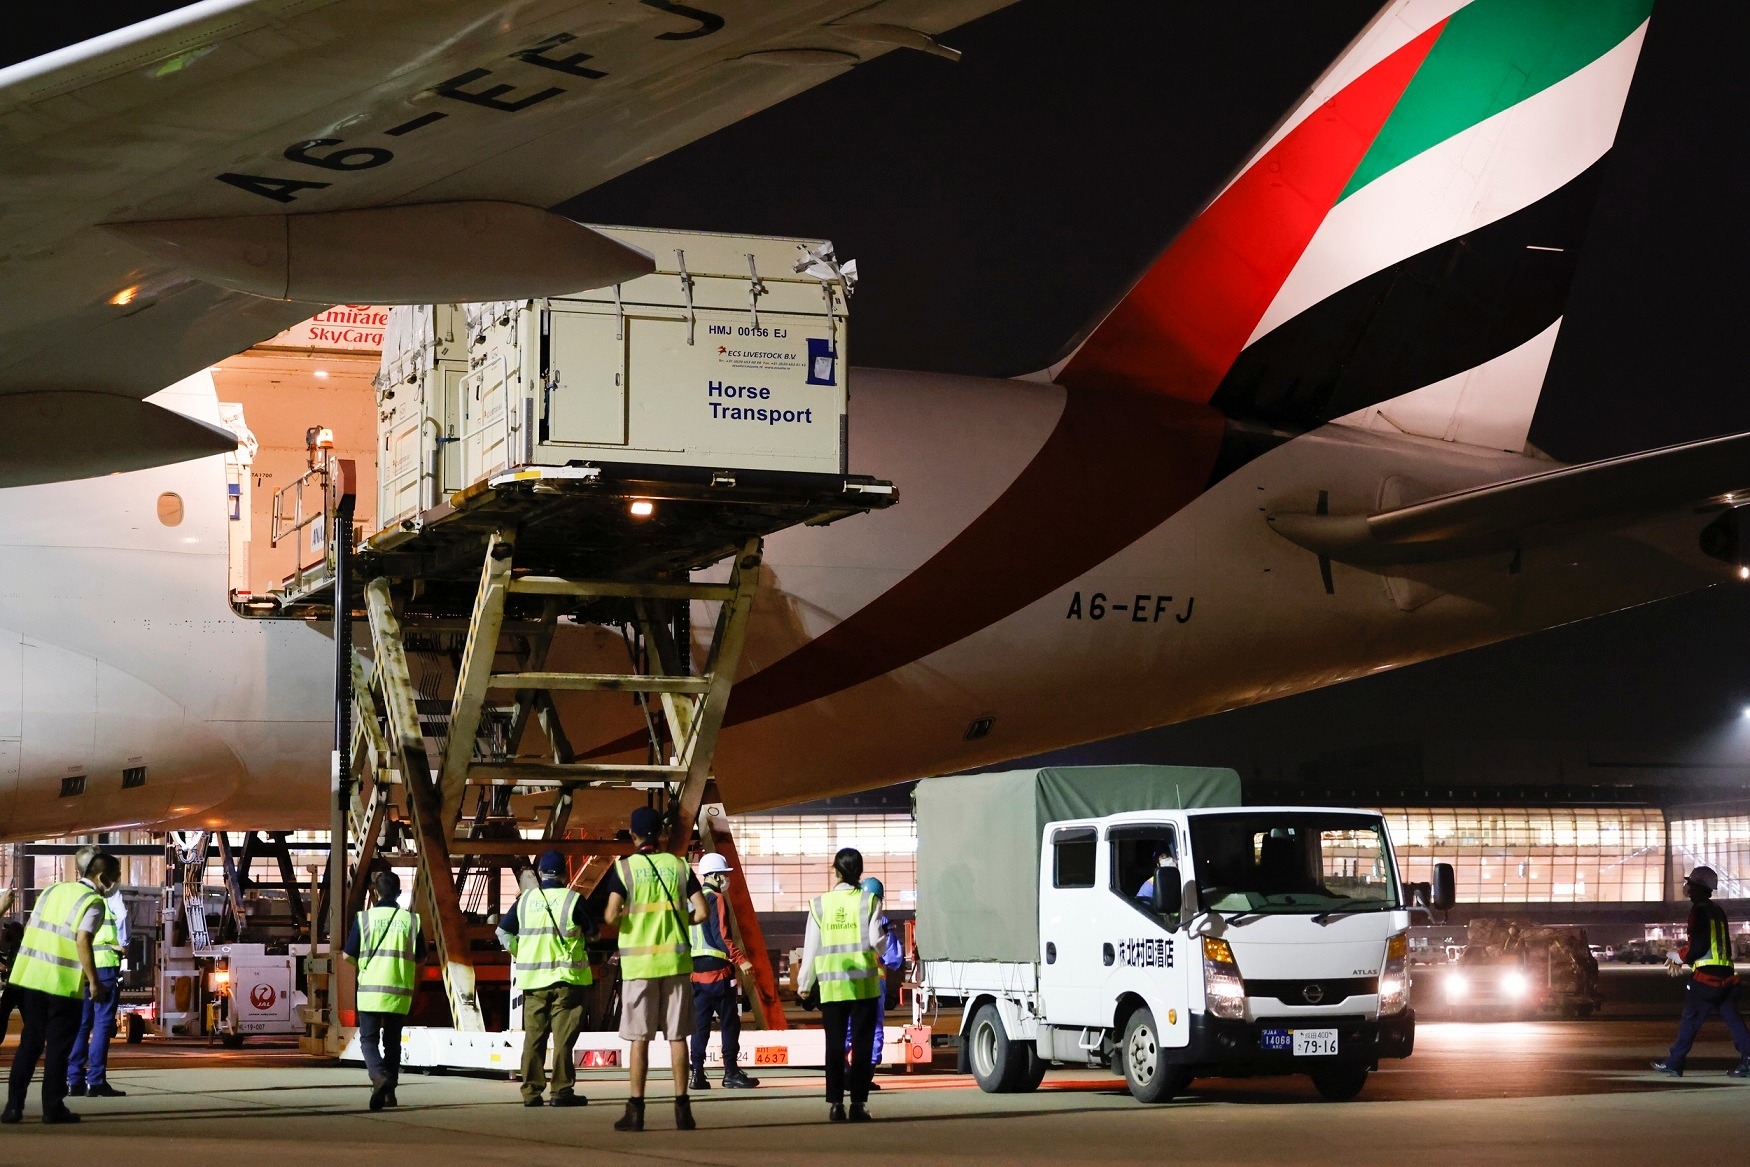 247匹赛马将陆续搭乘阿联酋航空货机抵达东京